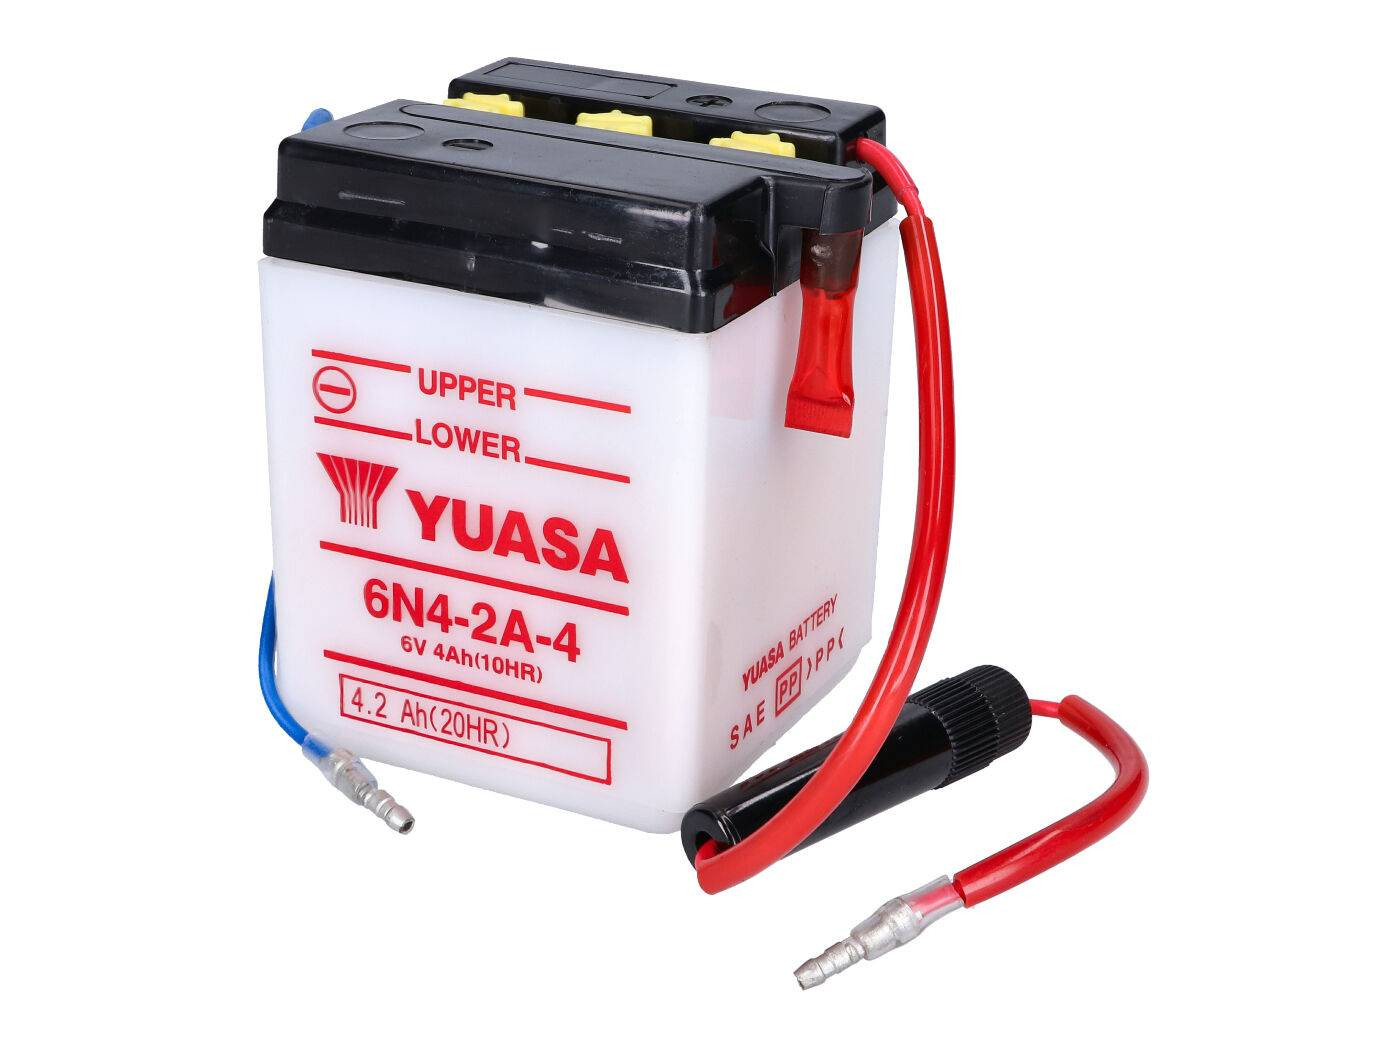 Yuasa 6N4-2A-4 akkumulátor - savcsomag nélkül